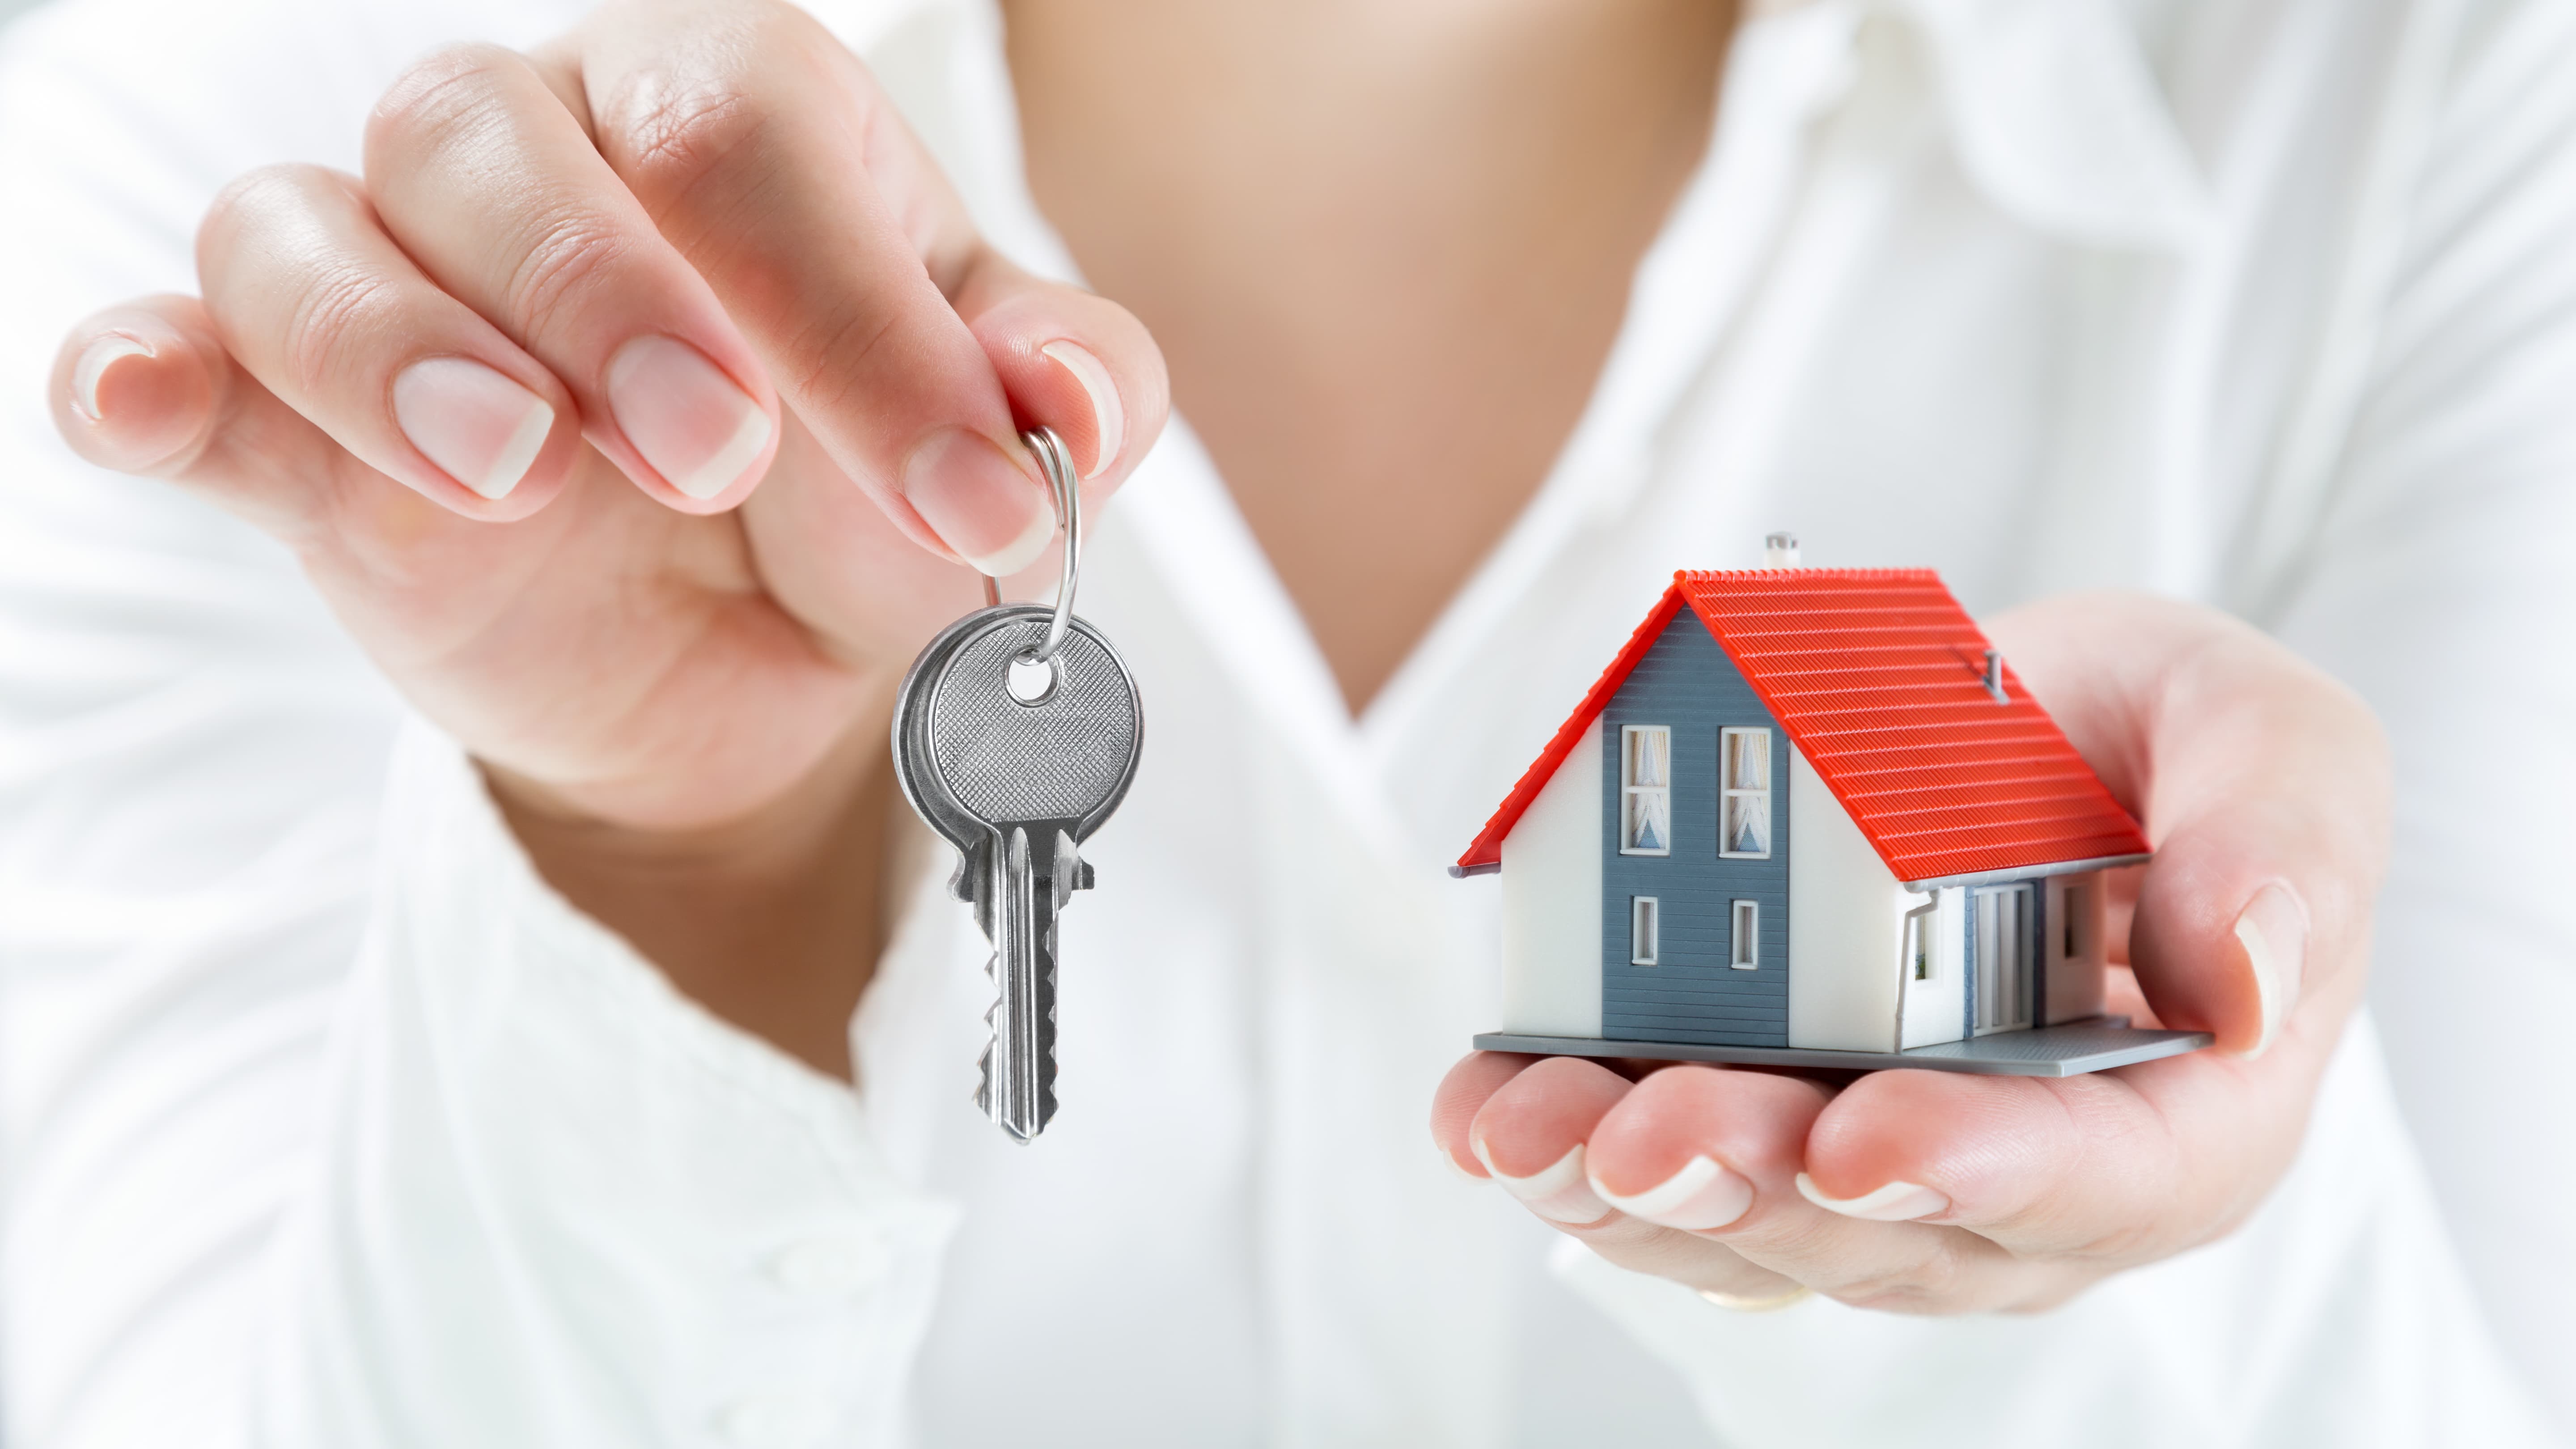 Покупка проверенной недвижимости. Домик с ключами. Ключи от квартиры в руке. «Ключи к дому». Недвижимость.